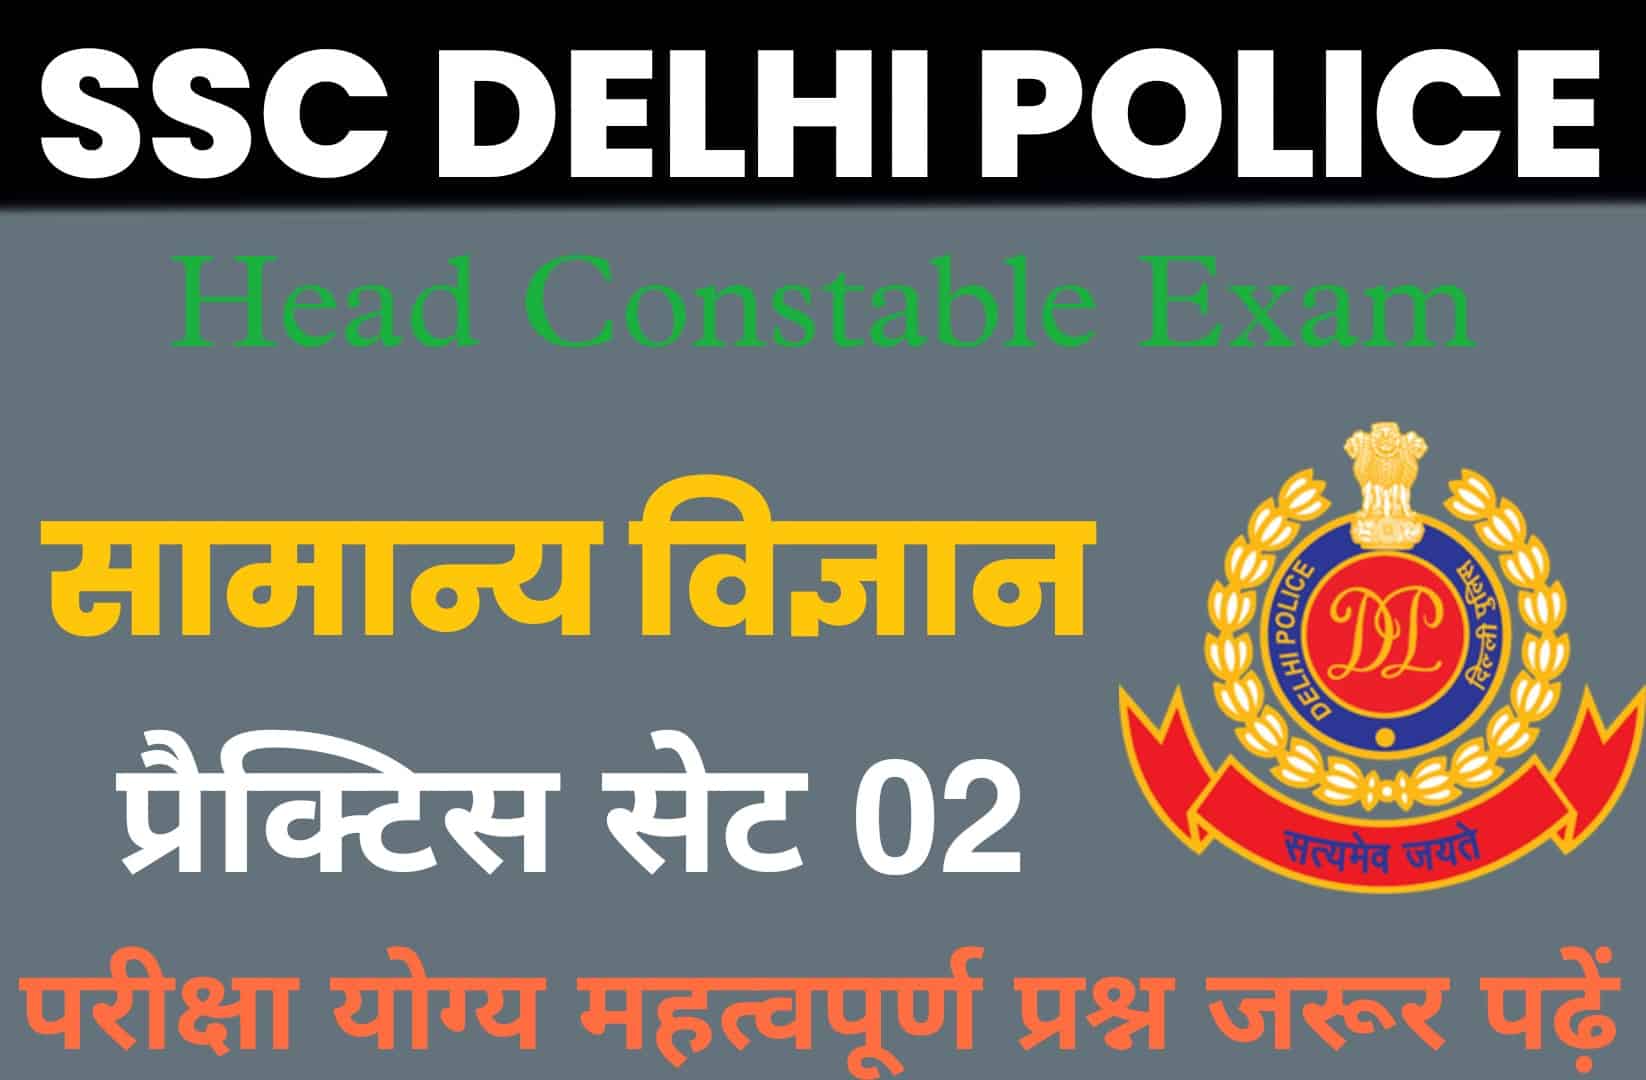 SSC Delhi Police Head Constable Science Practice Set 02 : परीक्षा में पूछें जाने योग्य महत्वपूर्ण प्रश्न, जरूर पढ़ें